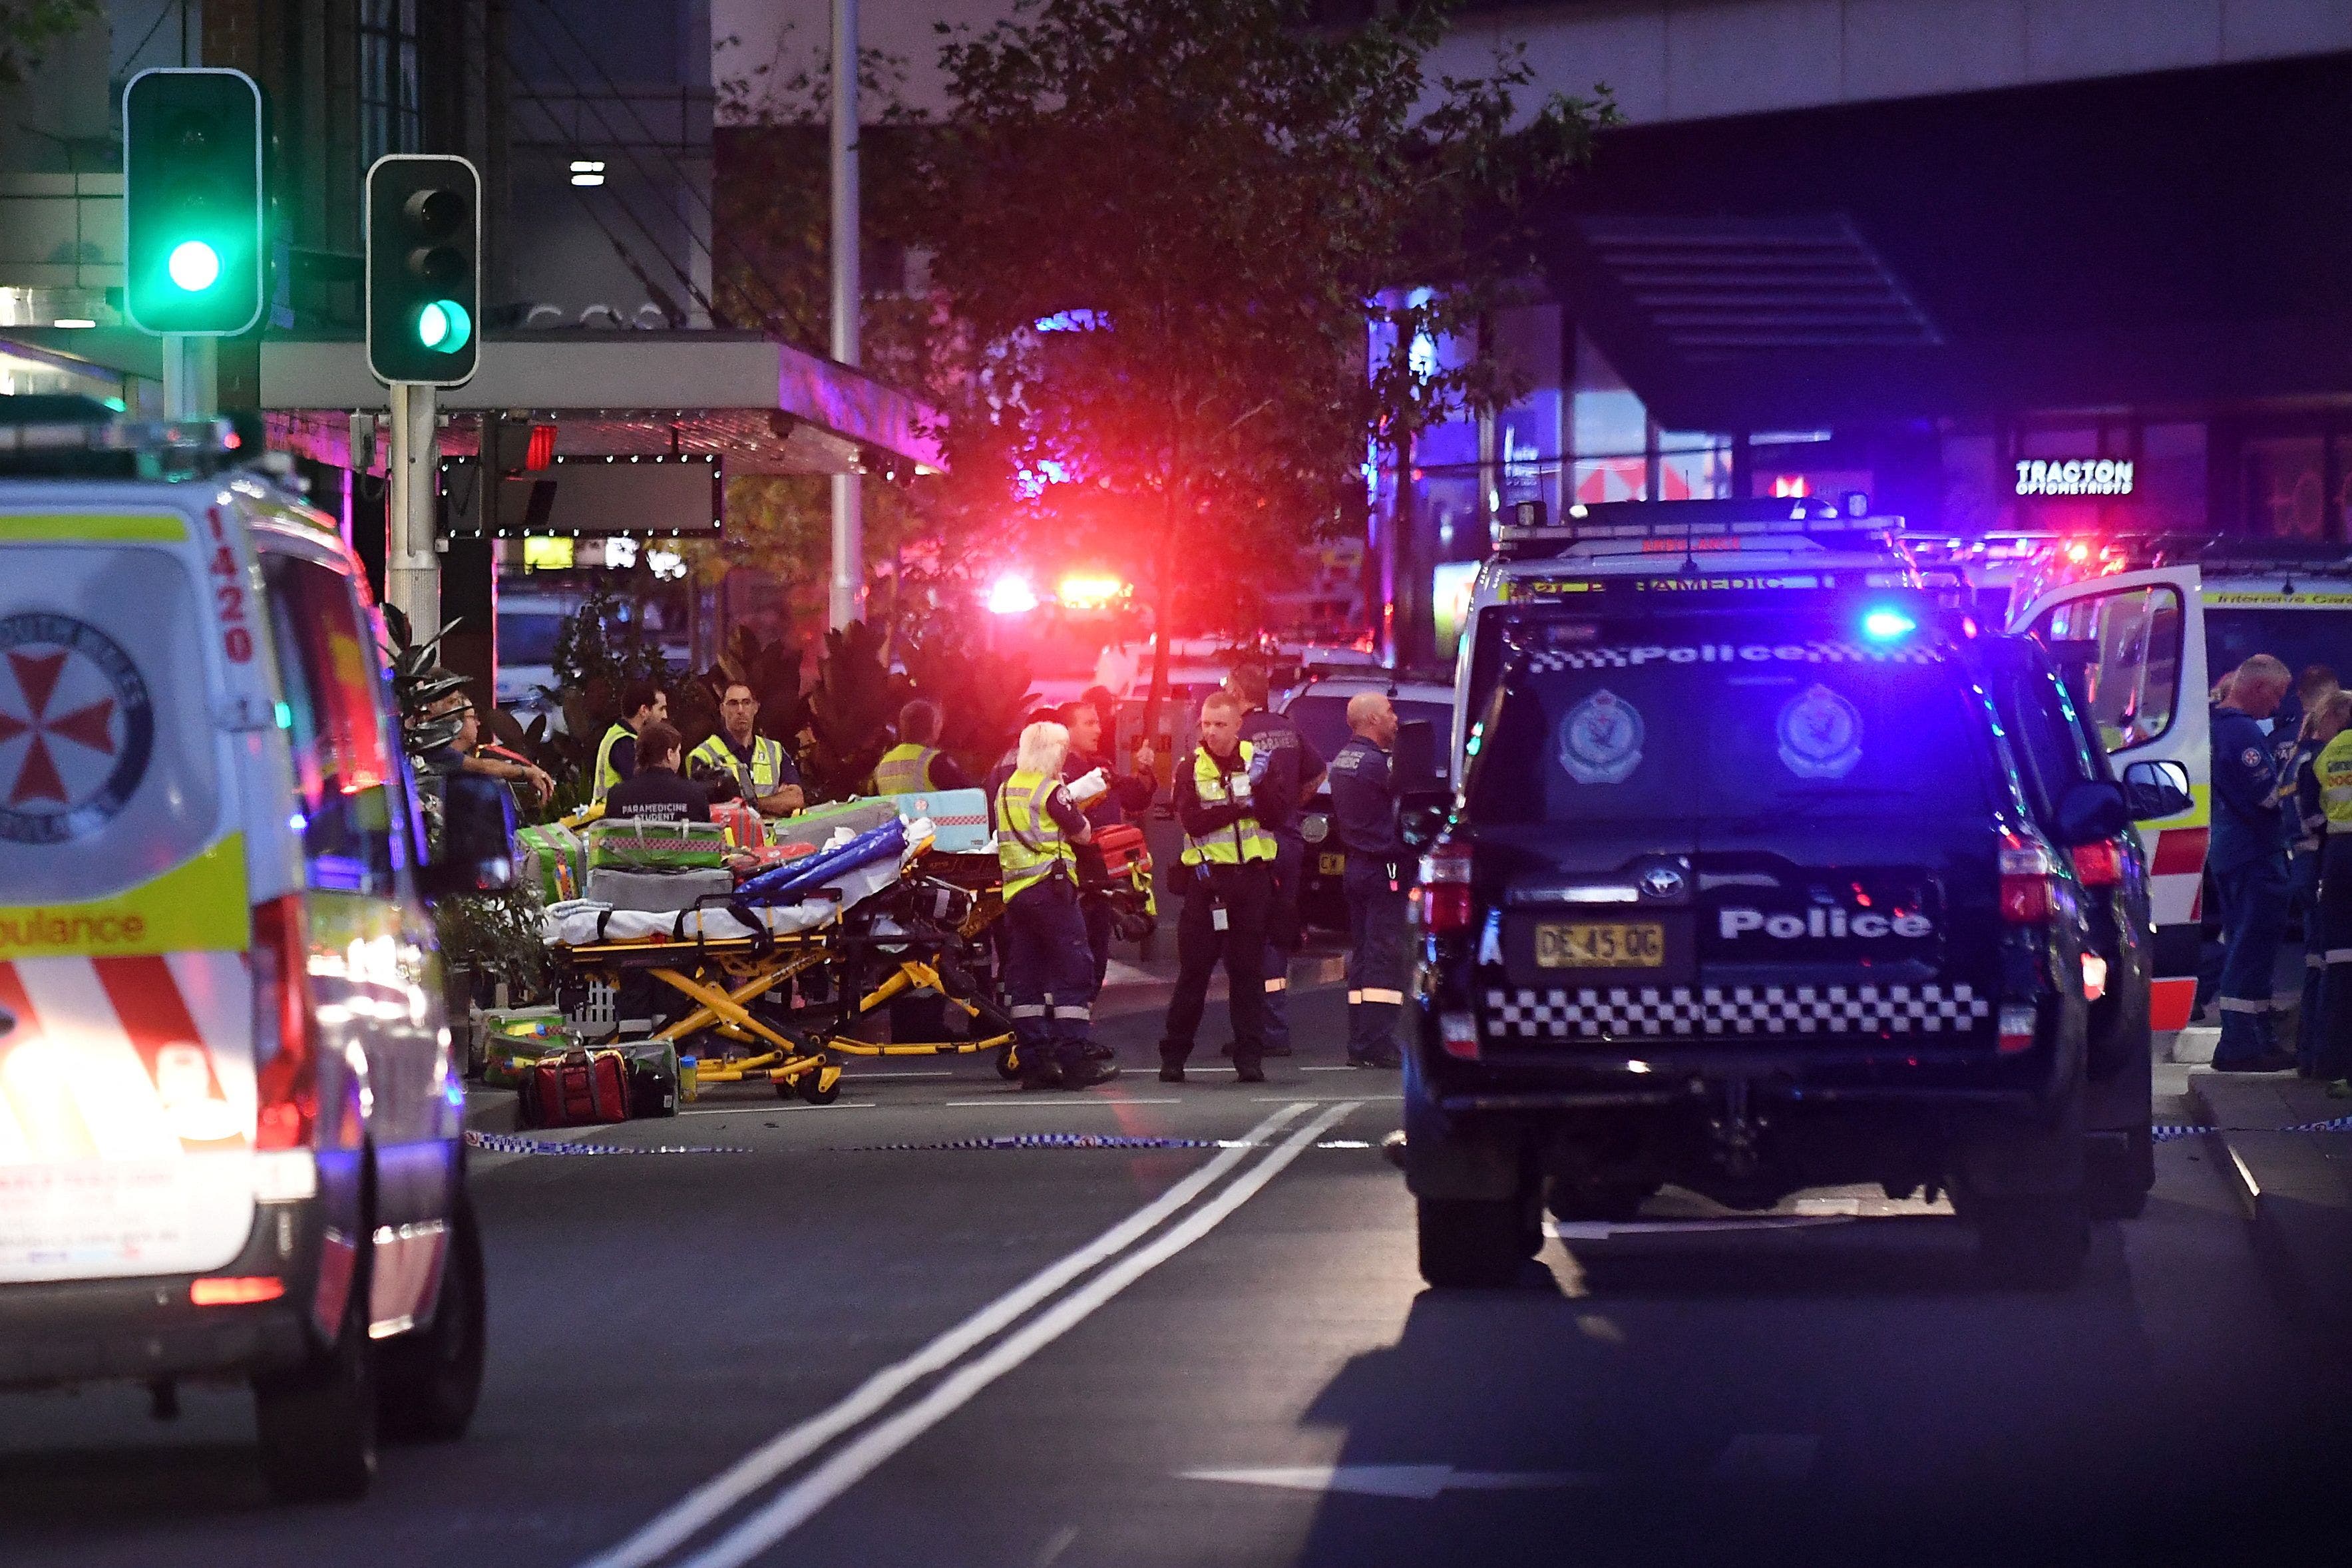 mindestens sieben tote bei messerattacke in einkaufszentrum in sydney – polizei geht nicht von terroristisch motiviertem angriff aus